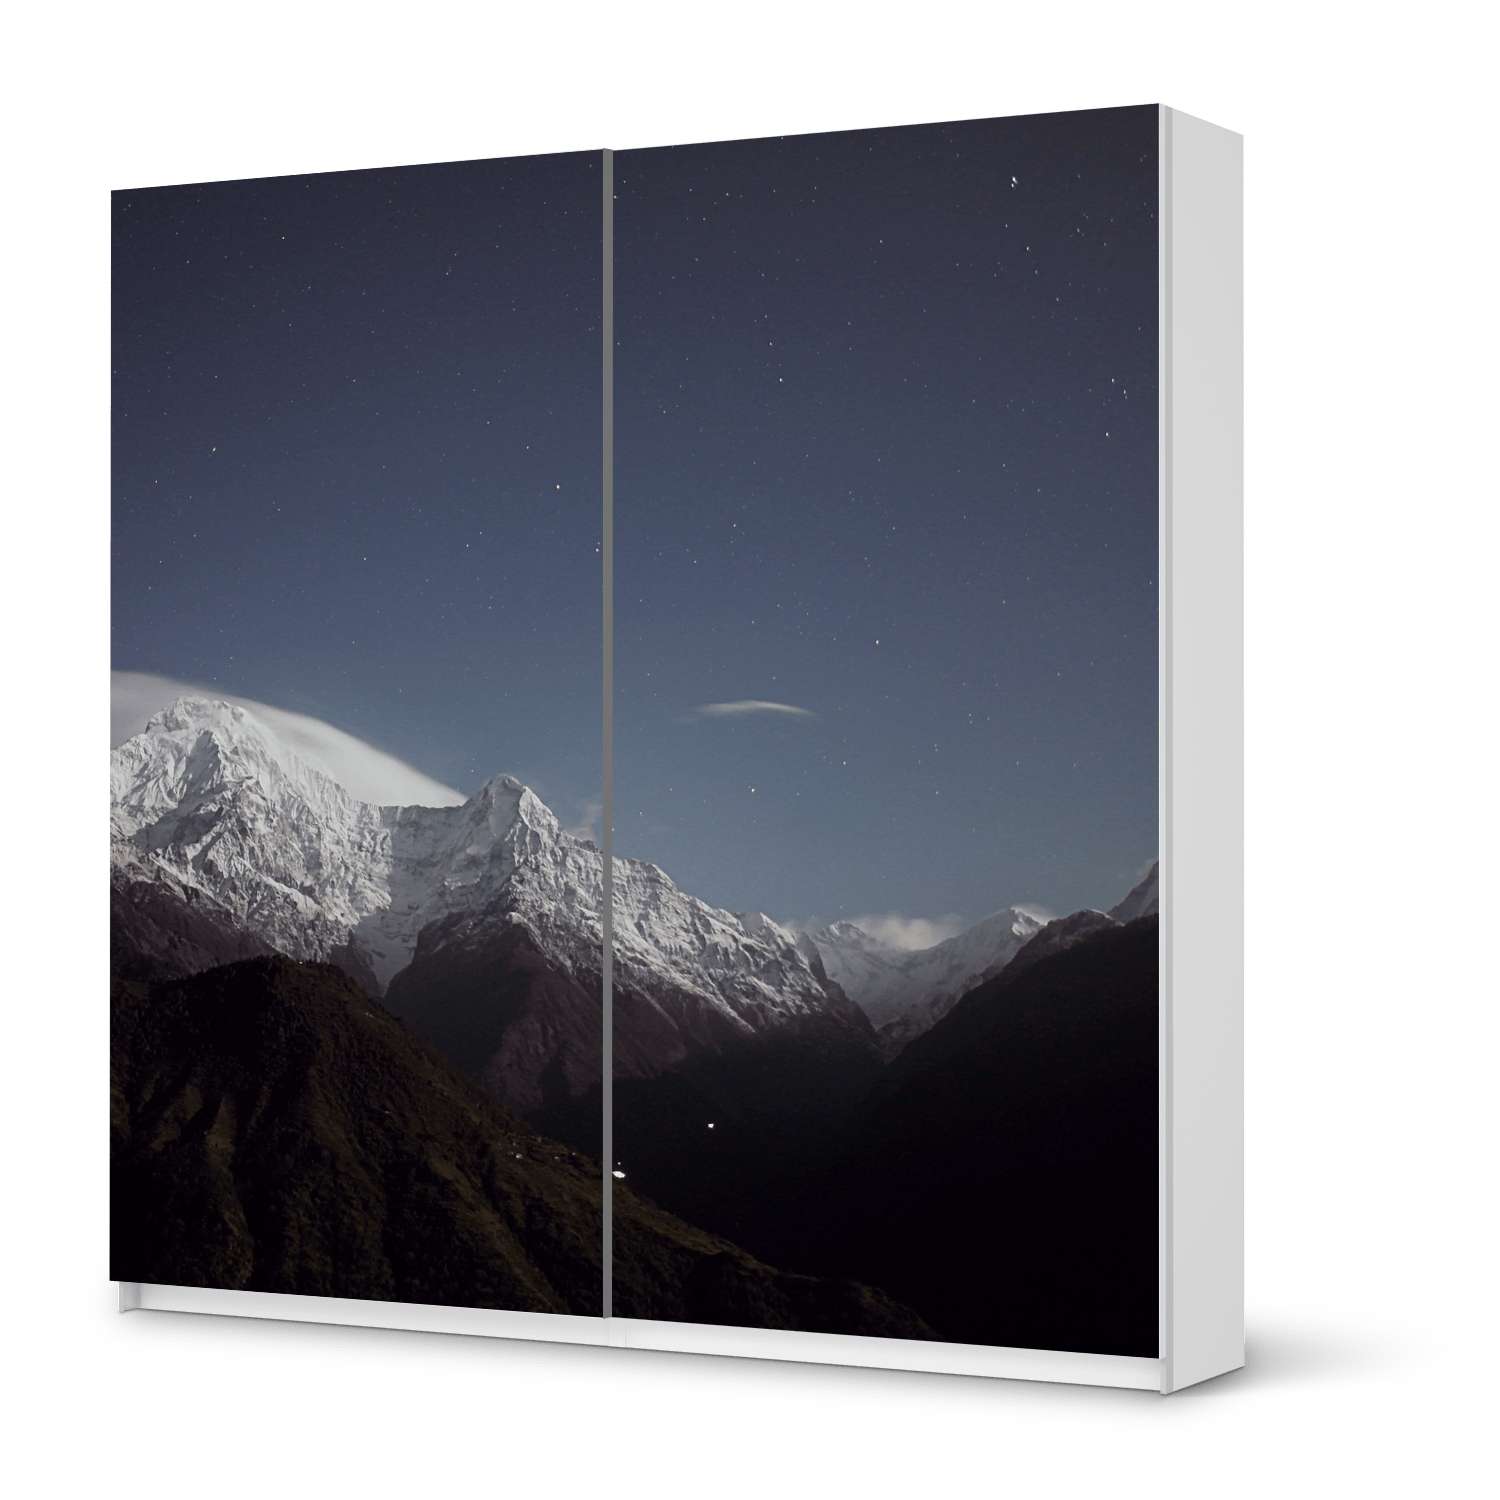 M?bel Klebefolie IKEA Pax Schrank 201 cm H?he - Schiebet?r - Design: Mountain Sky von creatisto